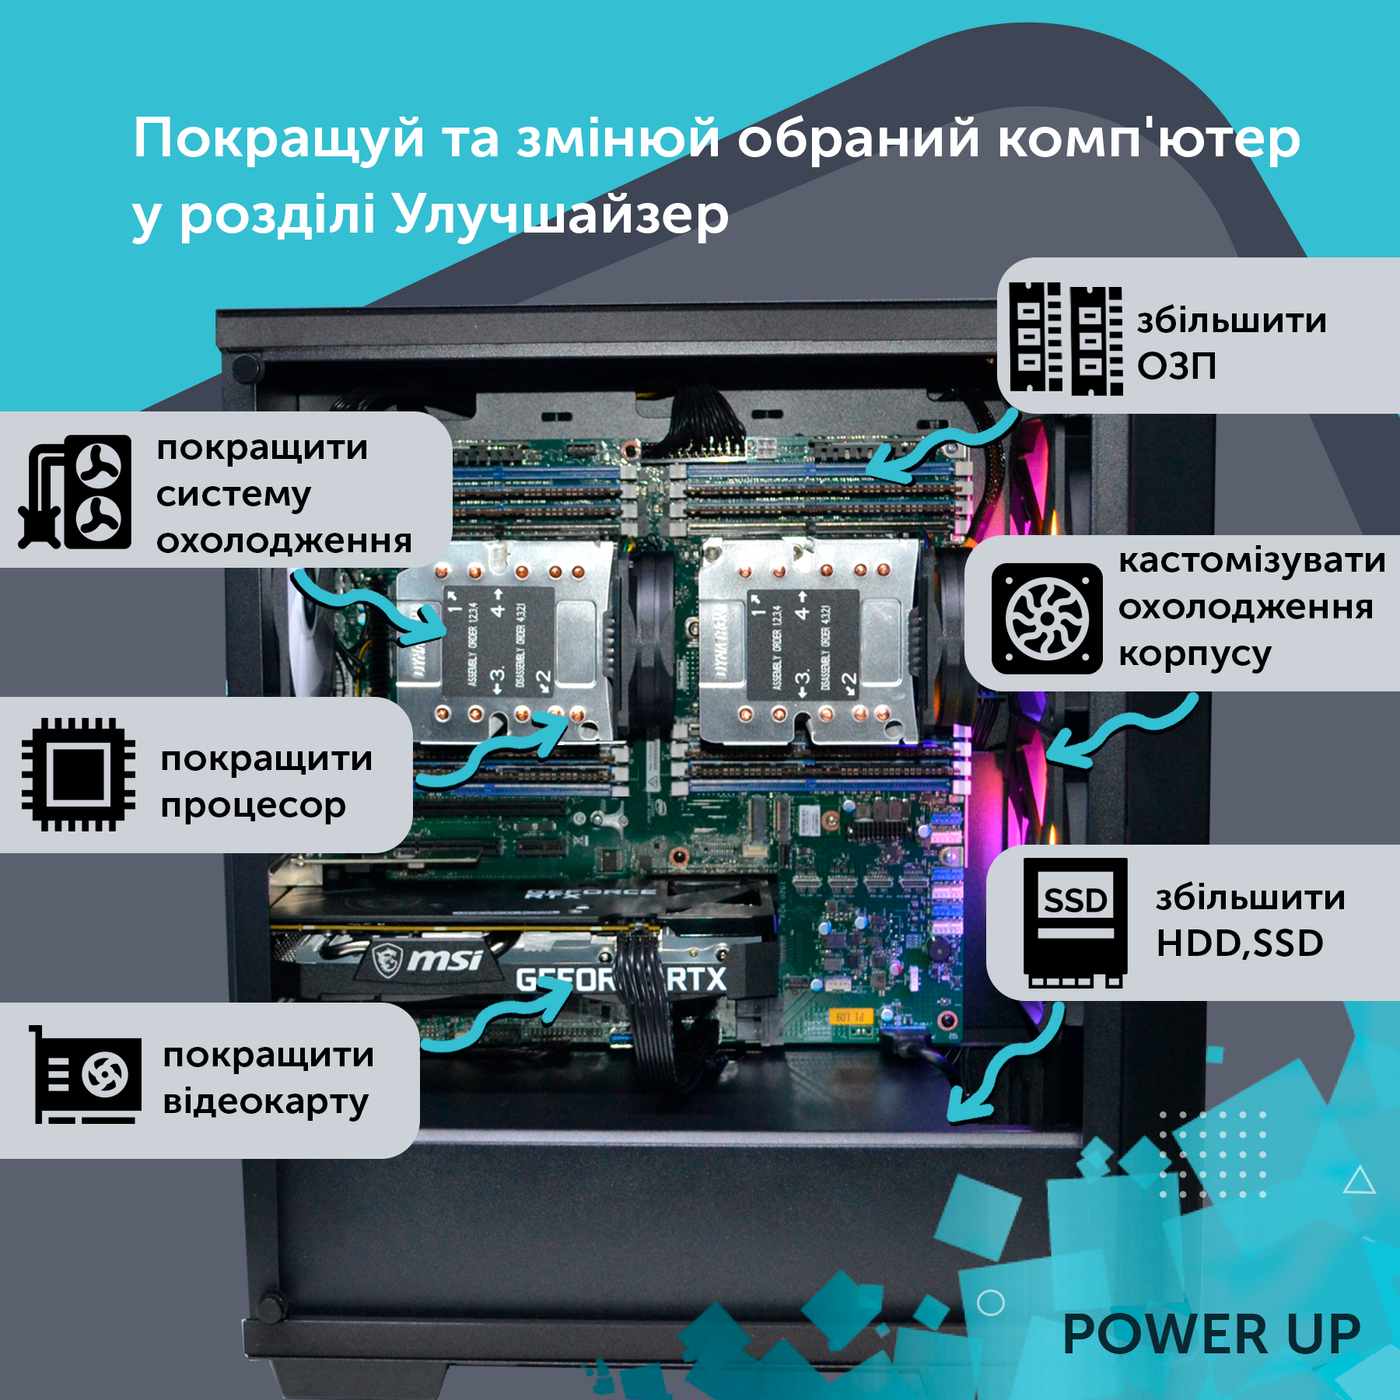 Робоча станція PowerUp Desktop #104 Ryzen 9 5950x/64GB/HDD 1TB/SSD 512GB/NVIDIA Quadro RTX A4000 16GB